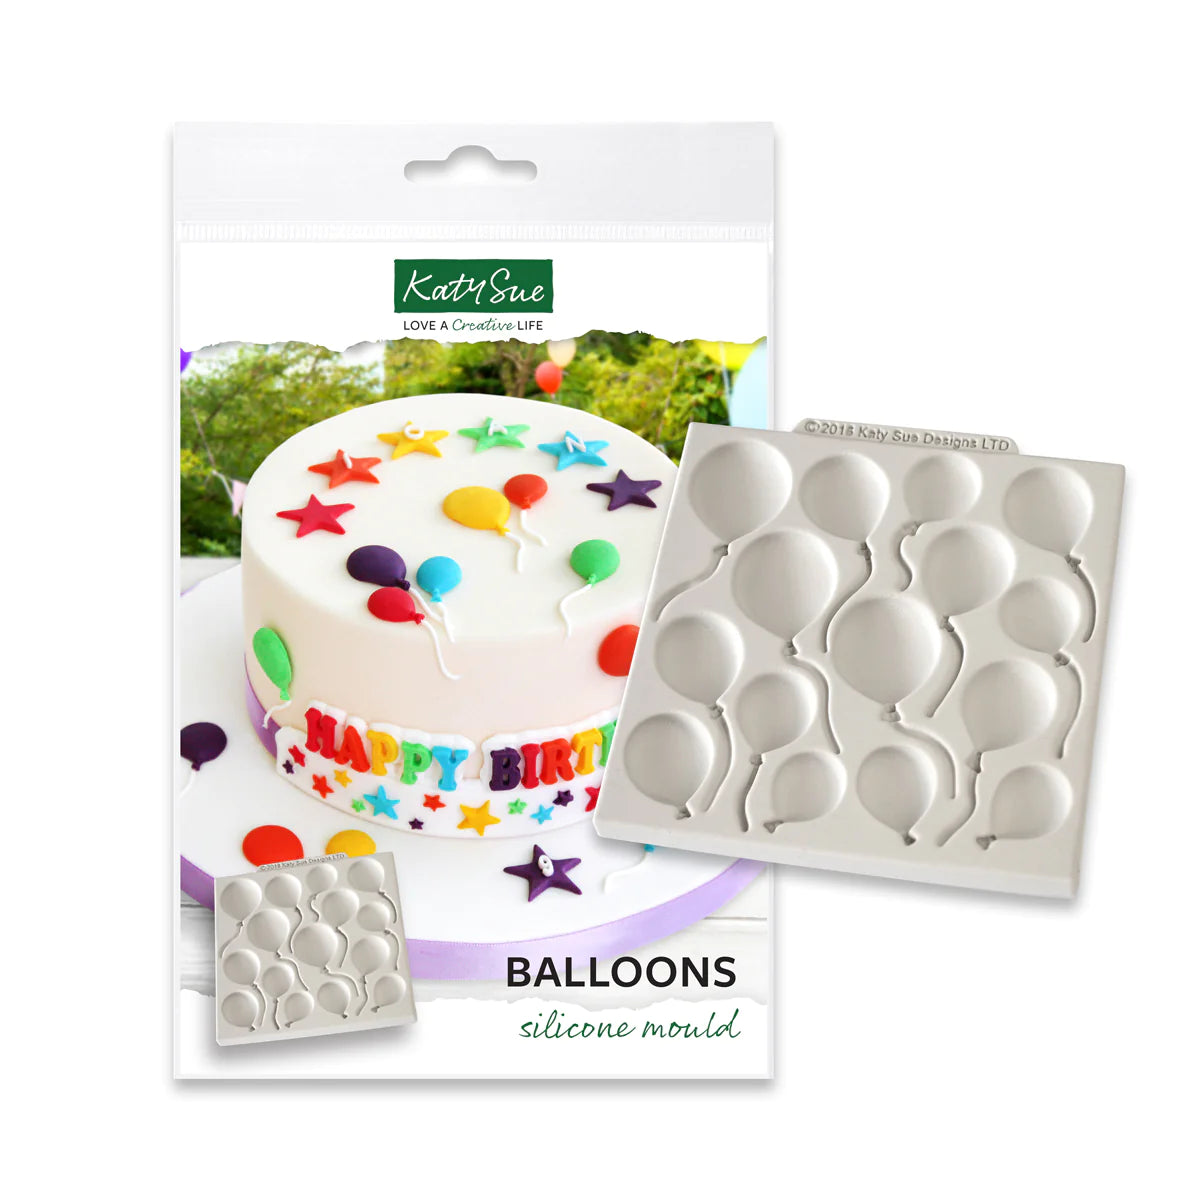 Katy Sue mold - Balloons